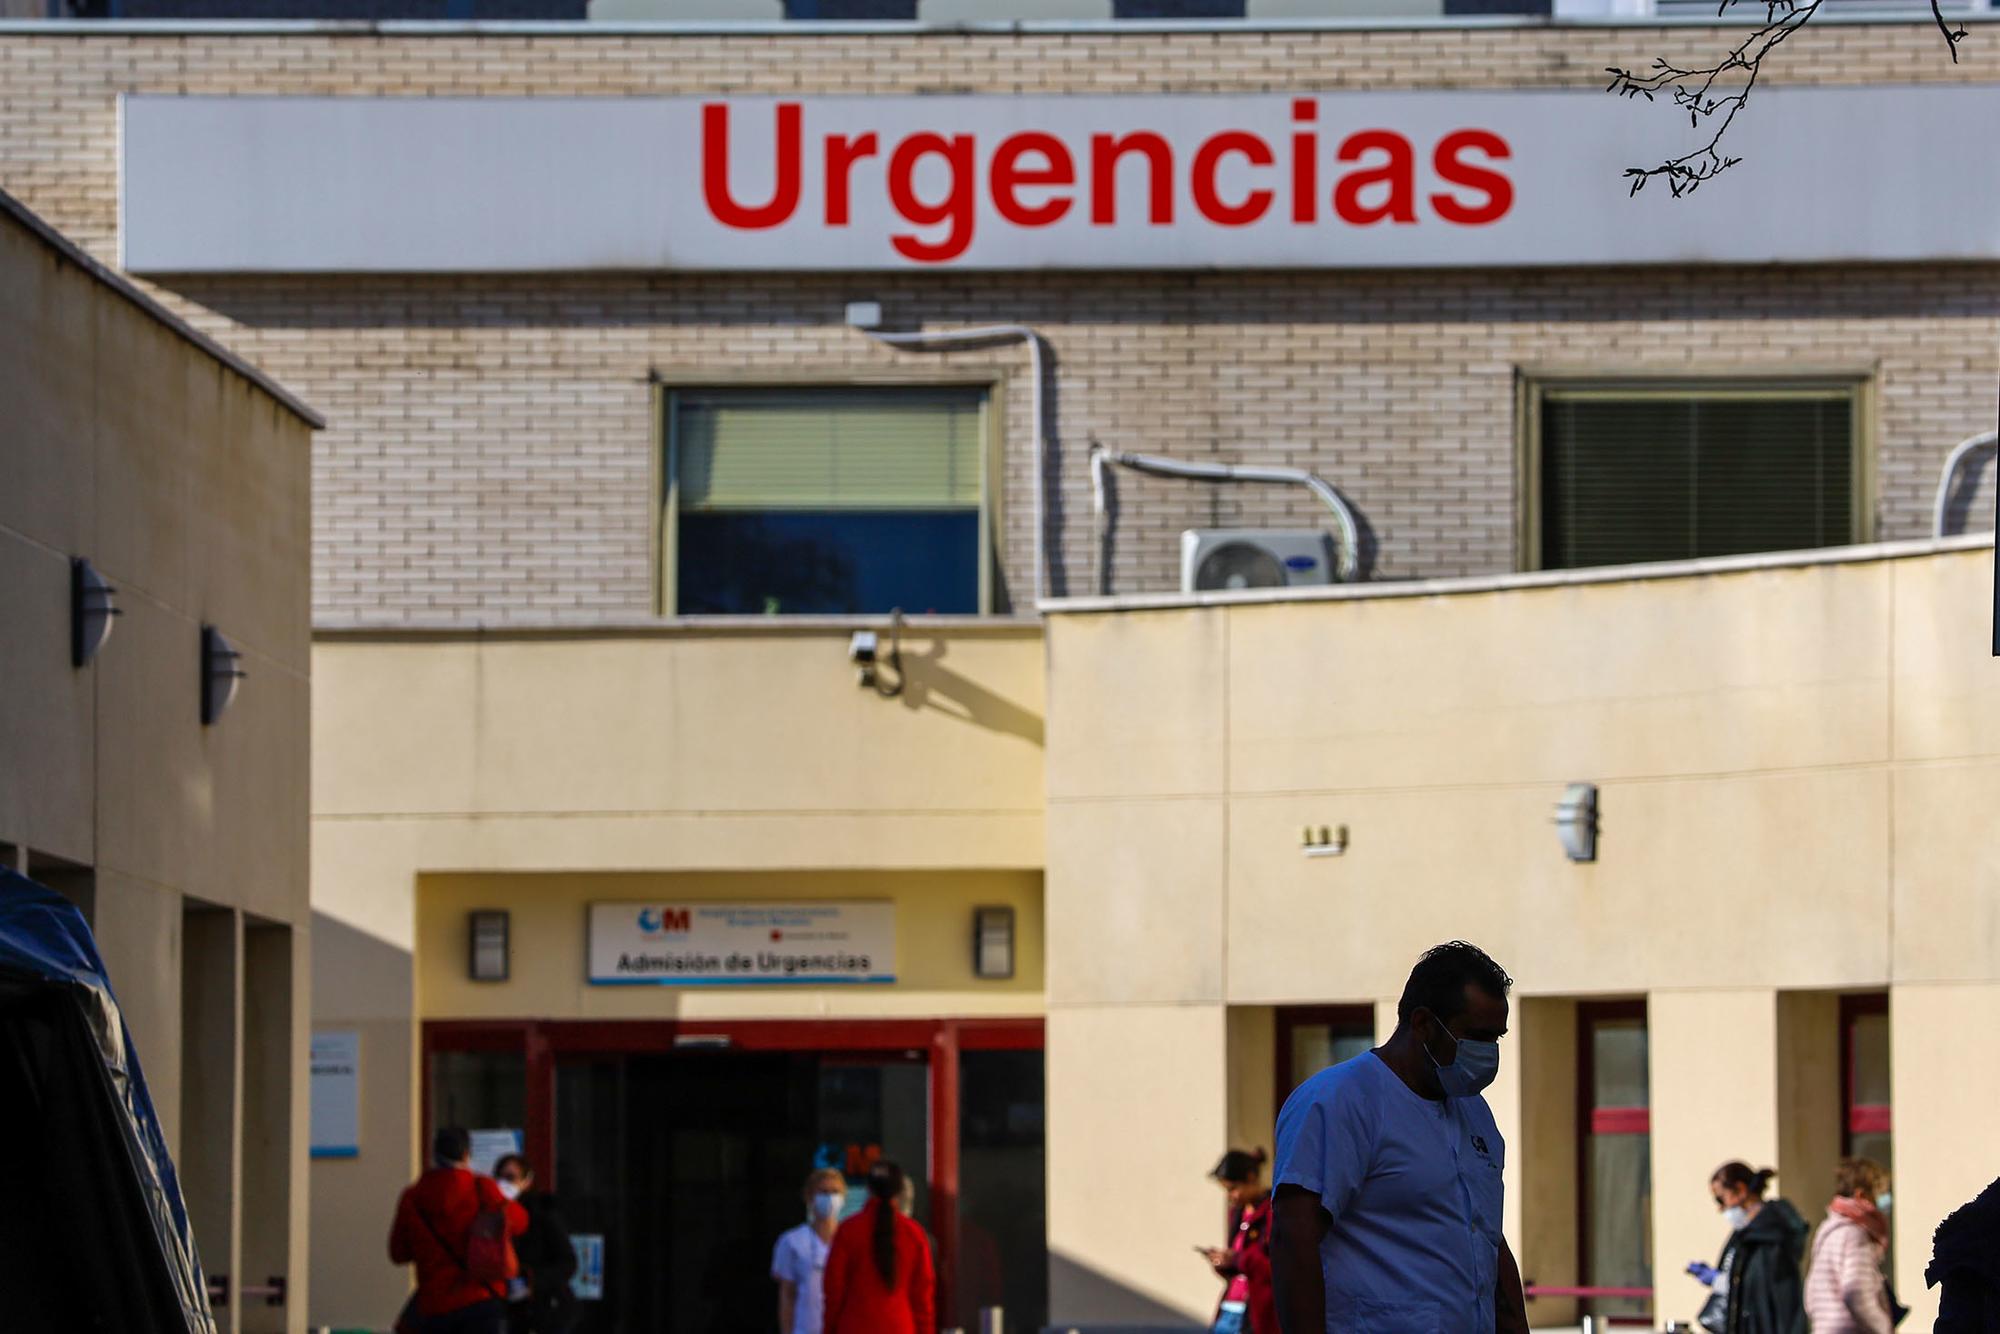 Gregorio Marañon Hospital de campaña - 10